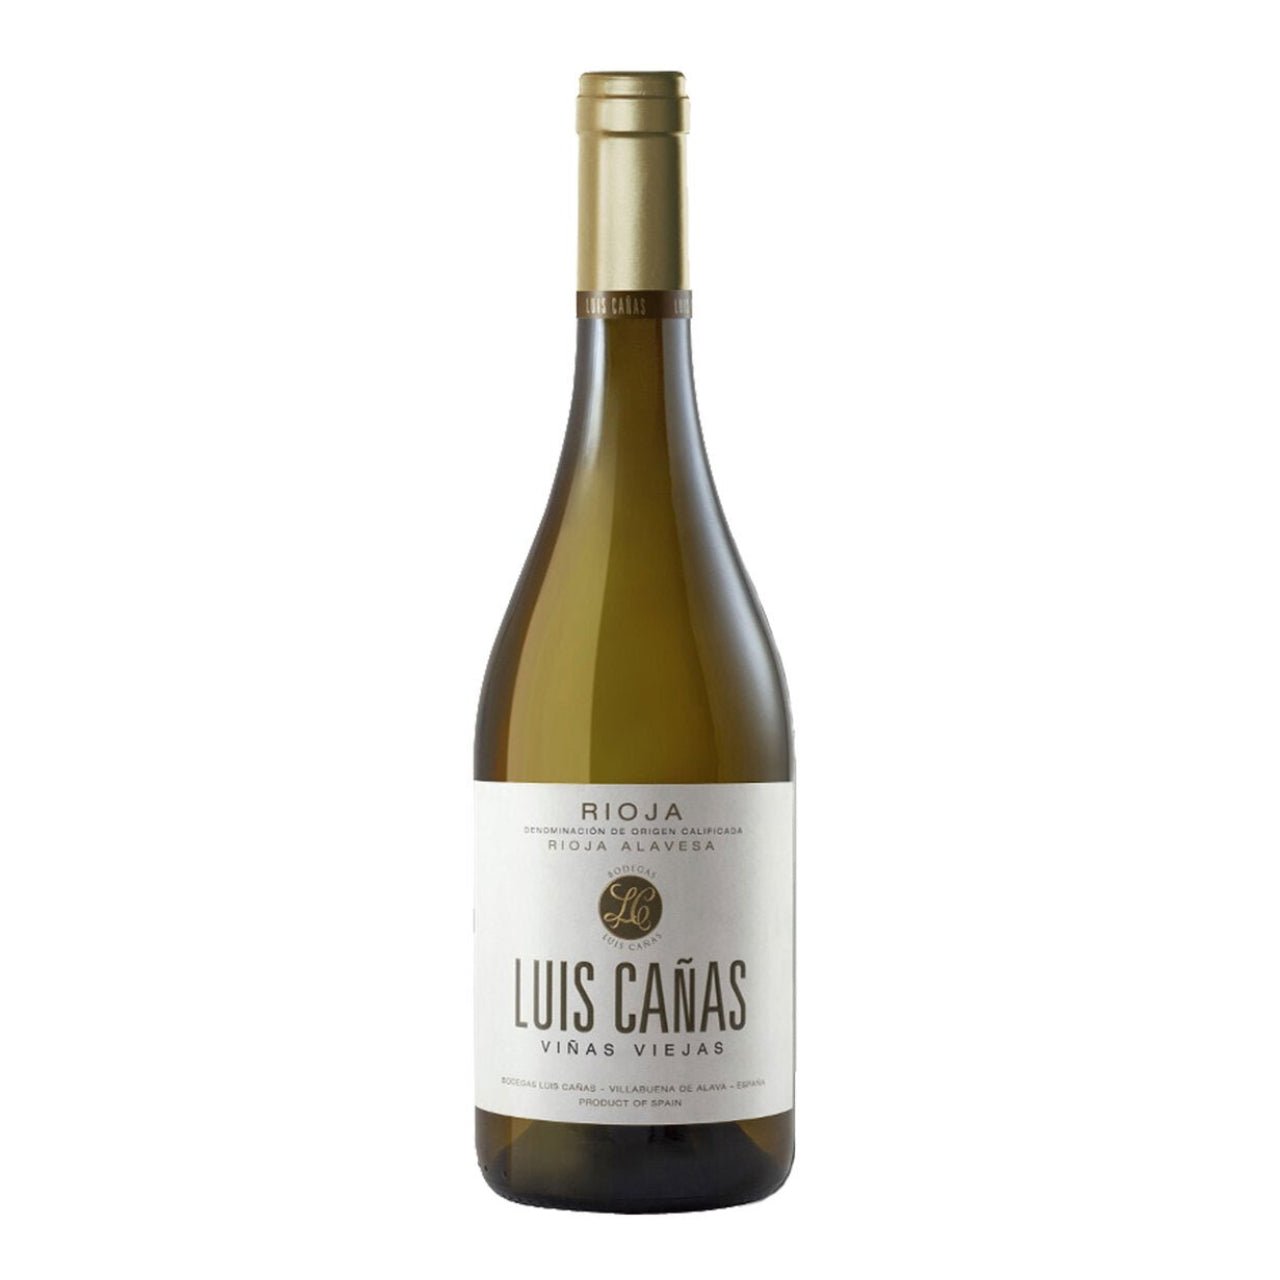 Luis Canas Vinas Viejas NV - Wine Spain White - Liquor Wine Cave